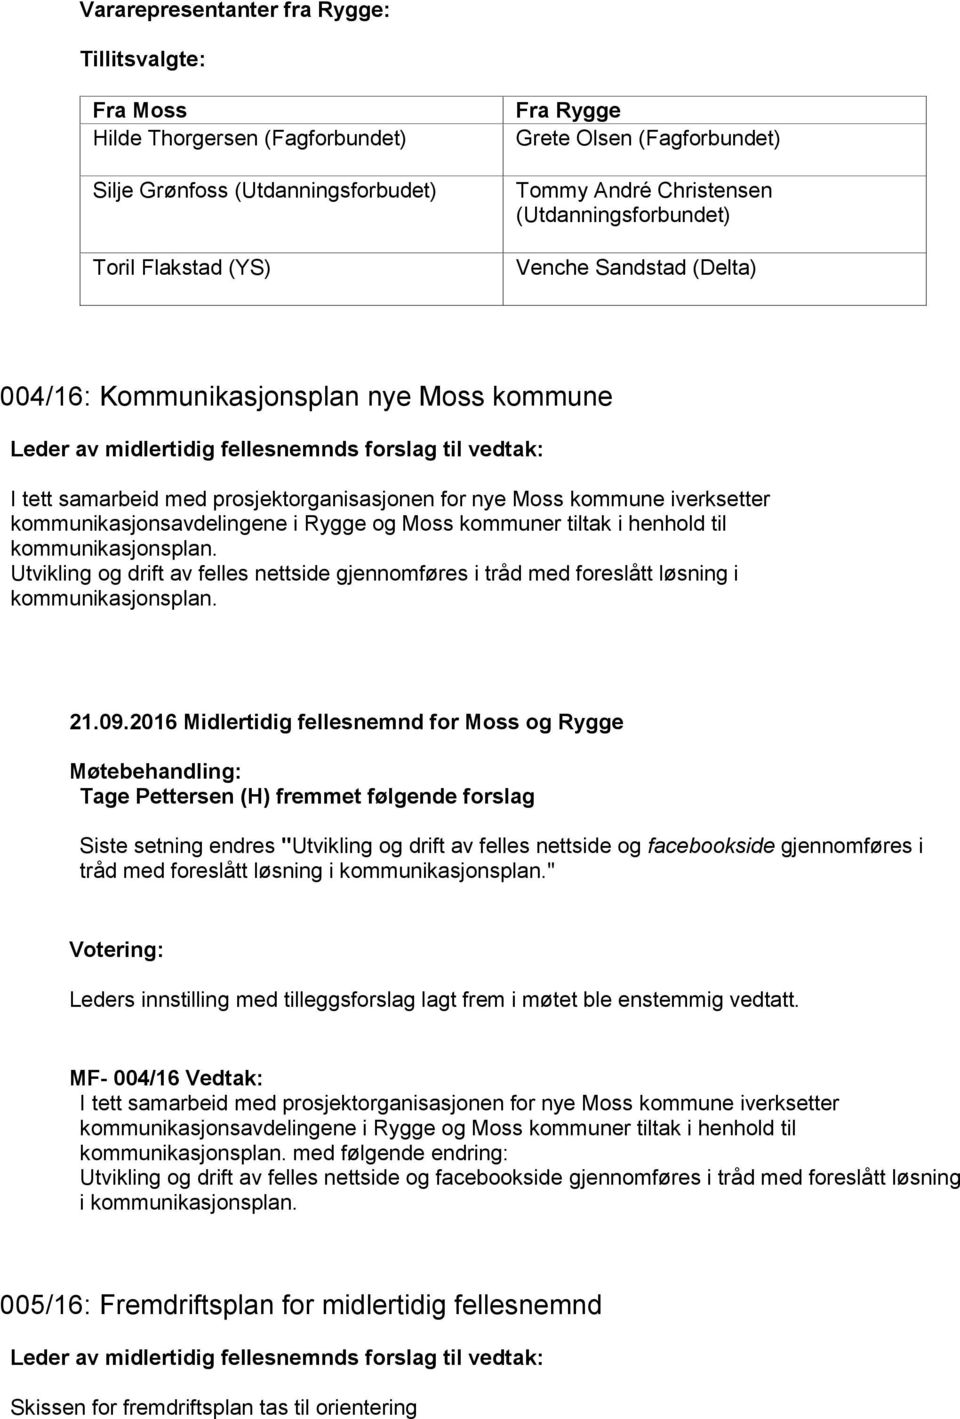 kommunikasjonsavdelingene i Rygge og Moss kommuner tiltak i henhold til kommunikasjonsplan. Utvikling og drift av felles nettside gjennomføres i tråd med foreslått løsning i kommunikasjonsplan.